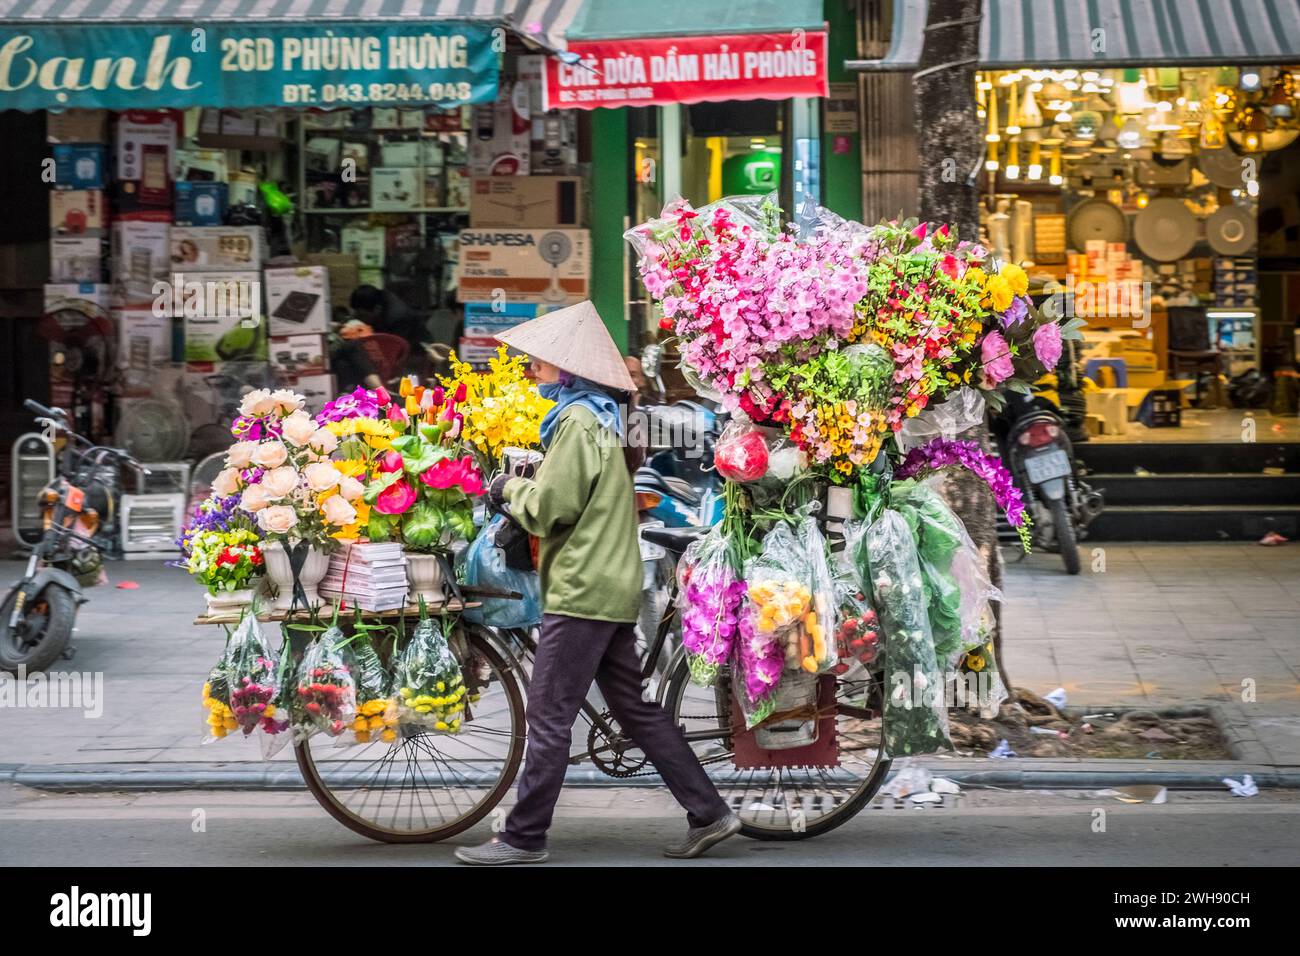 Femme vendeuse de fleurs avec un vélo chargé de fleurs fraîches à vendre, Hanoi, Vietnam Banque D'Images